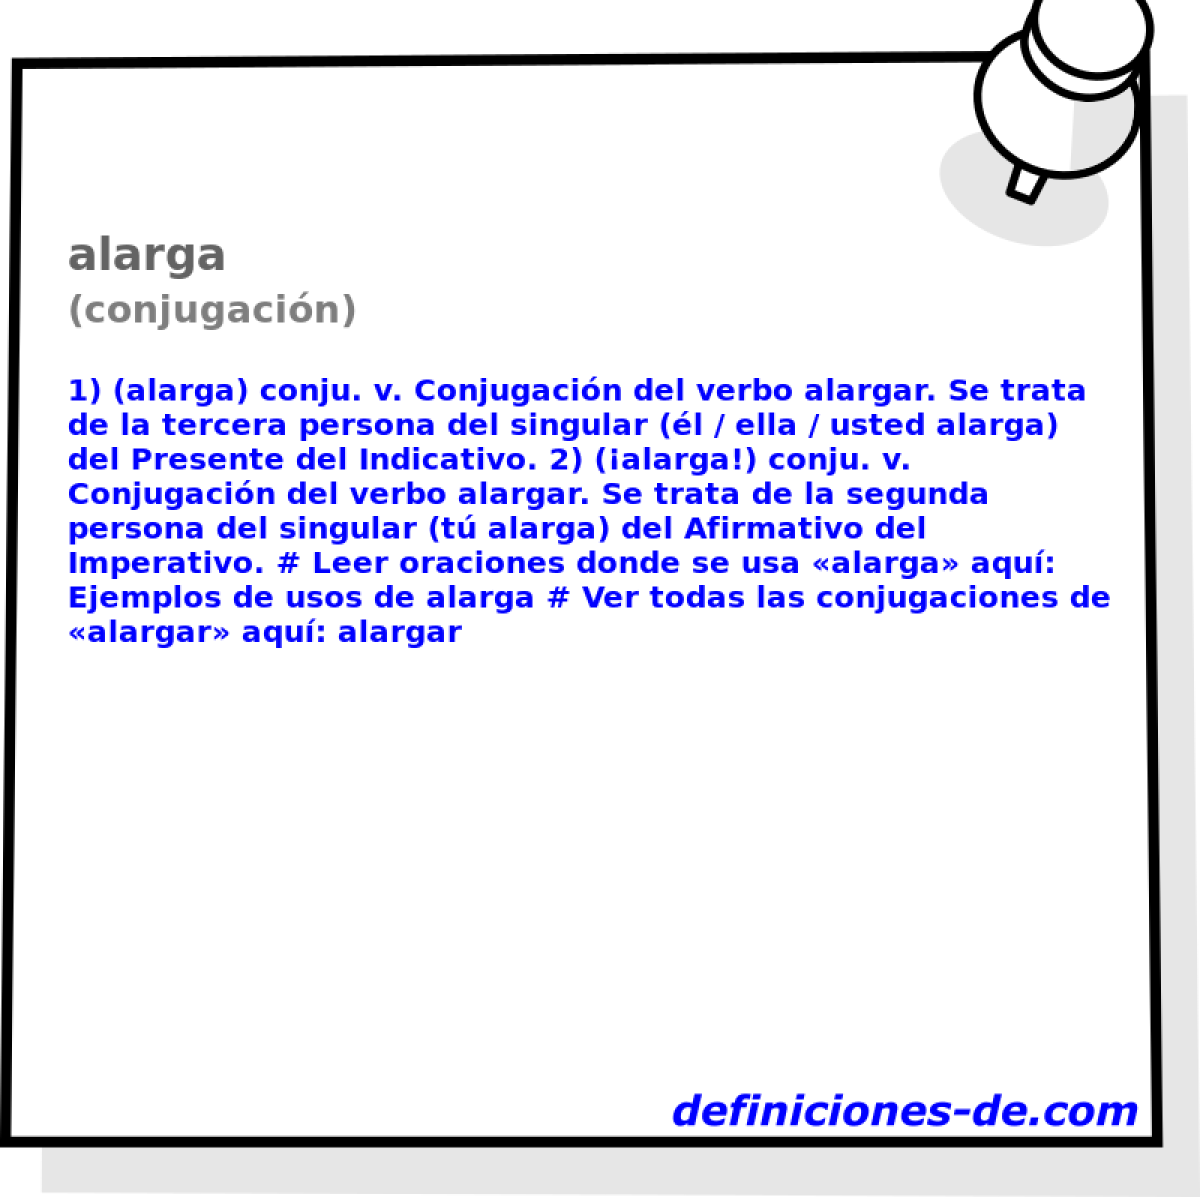 alarga (conjugacin)